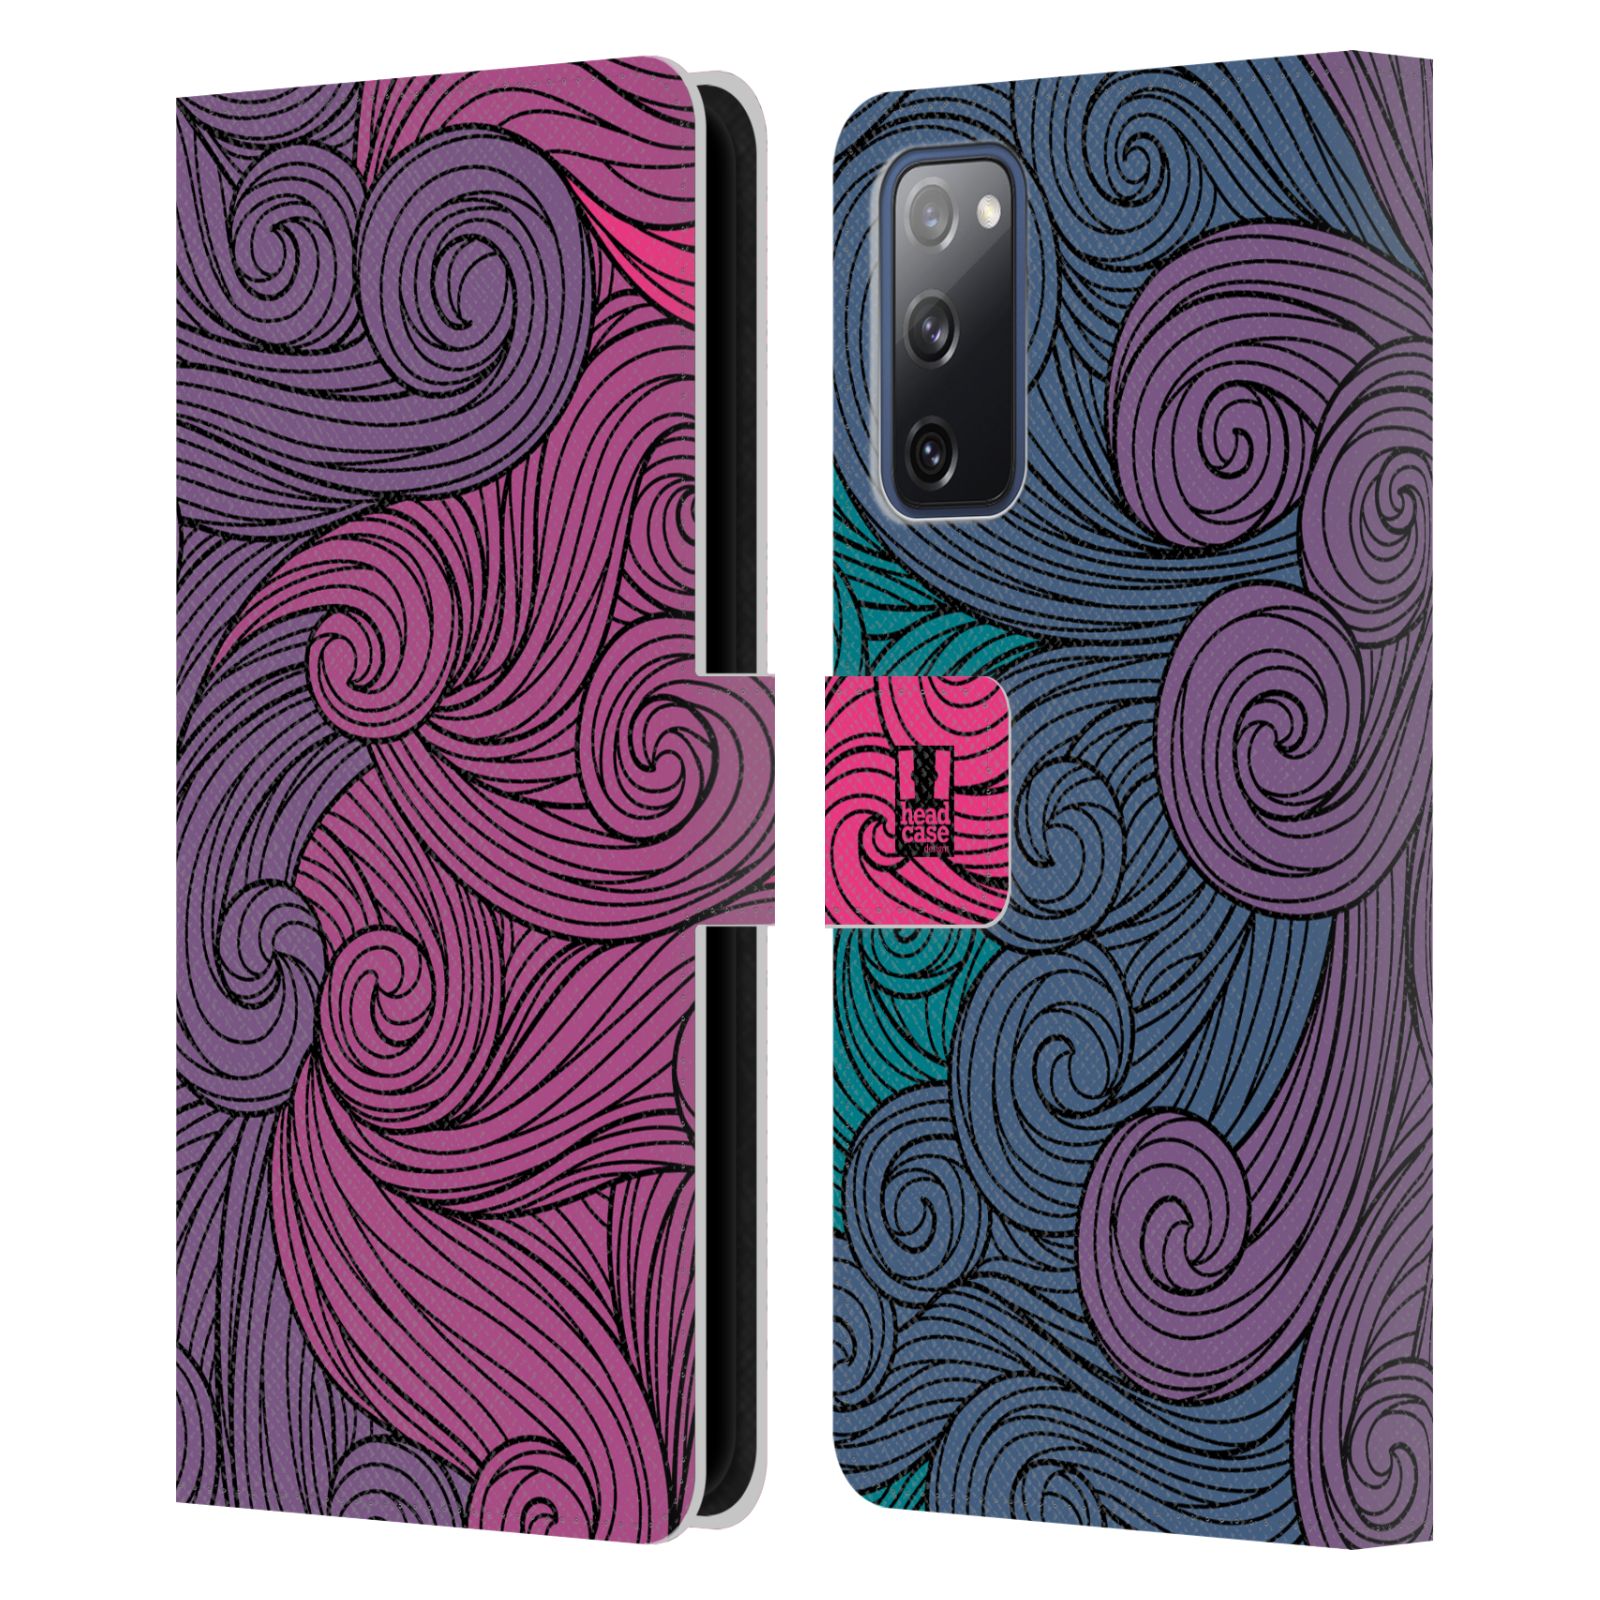 Pouzdro HEAD CASE na mobil Samsung Galaxy S20 FE / S20 FE 5G barevné vlny růžová a modrá